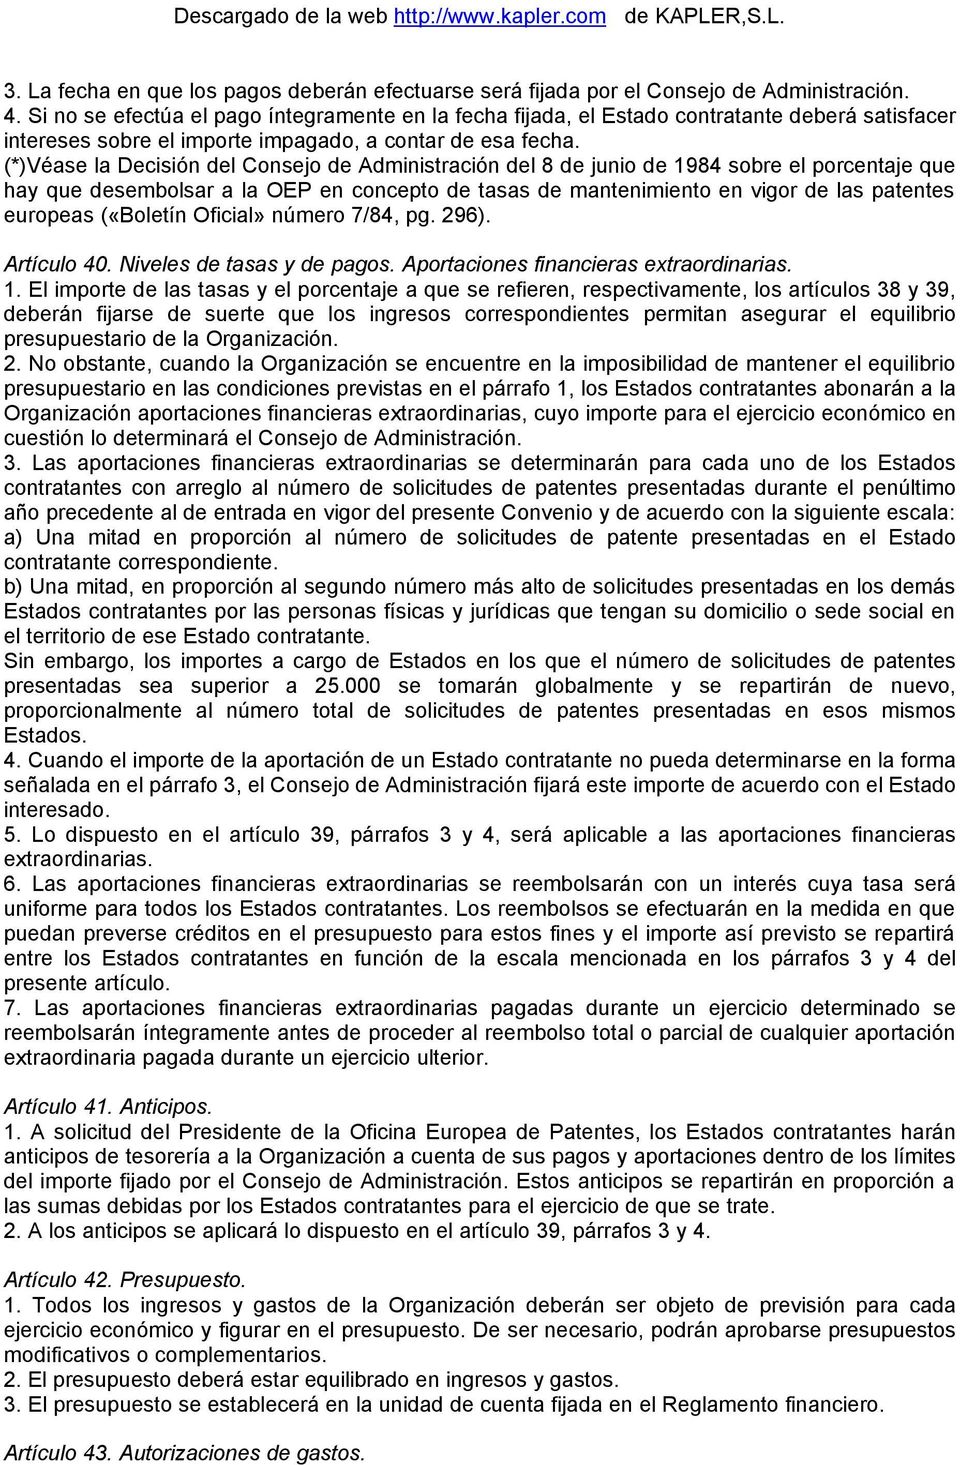 (*)Véase la Decisión del Consejo de Administración del 8 de junio de 1984 sobre el porcentaje que hay que desembolsar a la OEP en concepto de tasas de mantenimiento en vigor de las patentes europeas